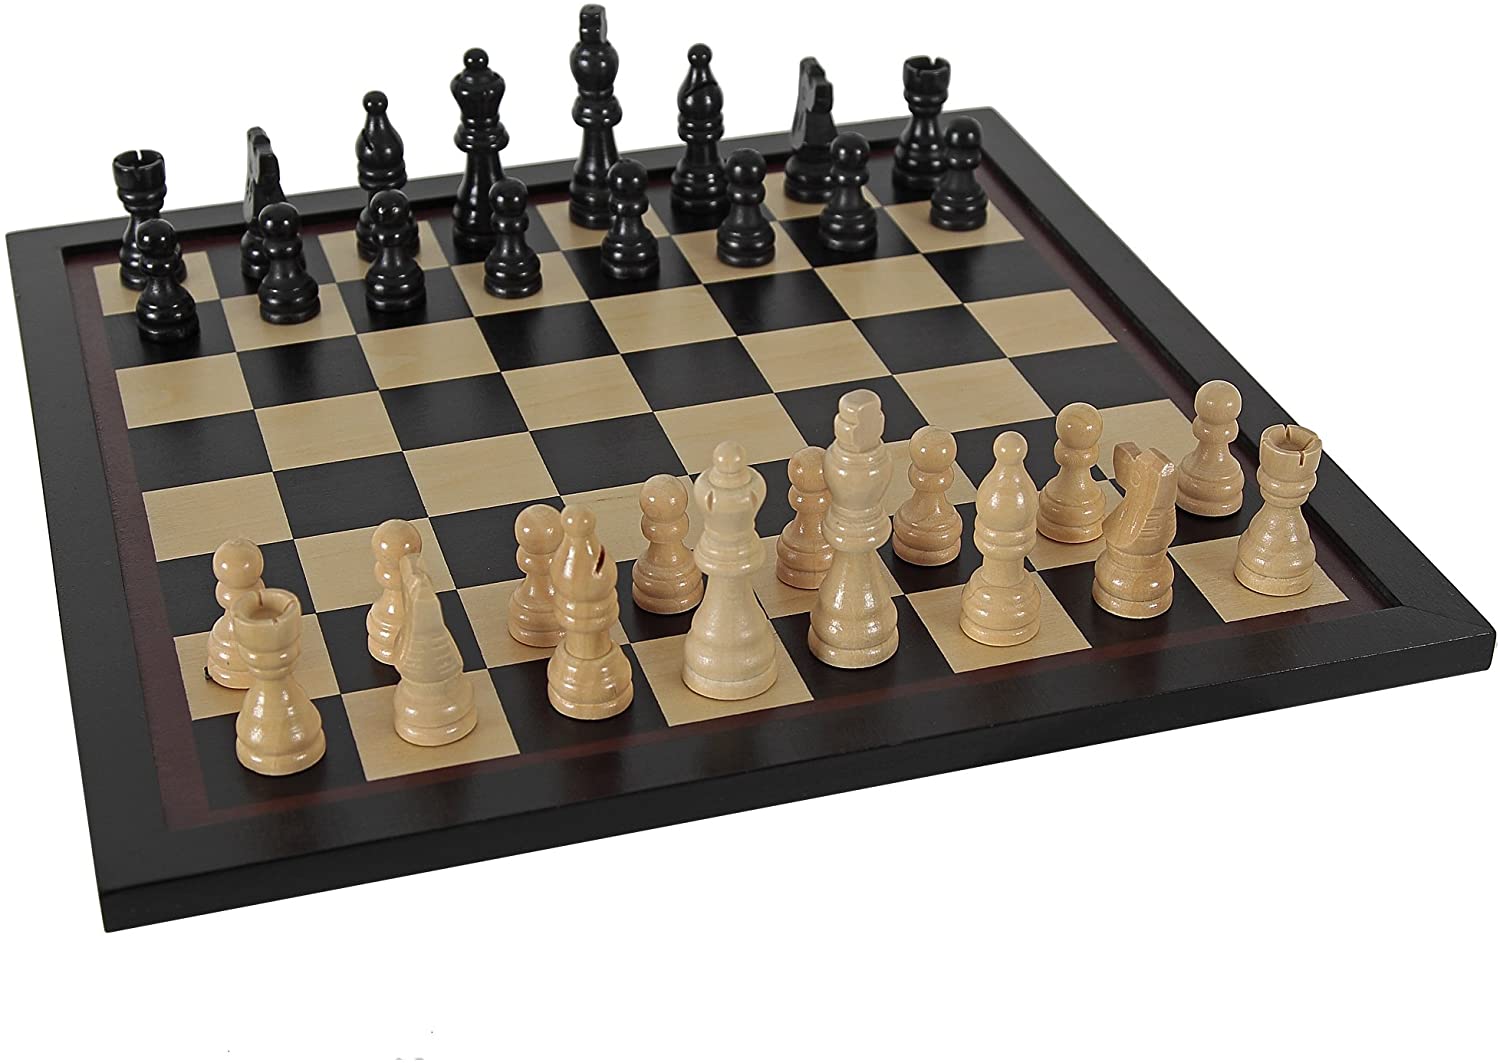 El juego de ajedrez más caro del mundo cuesta 600.000 dólares